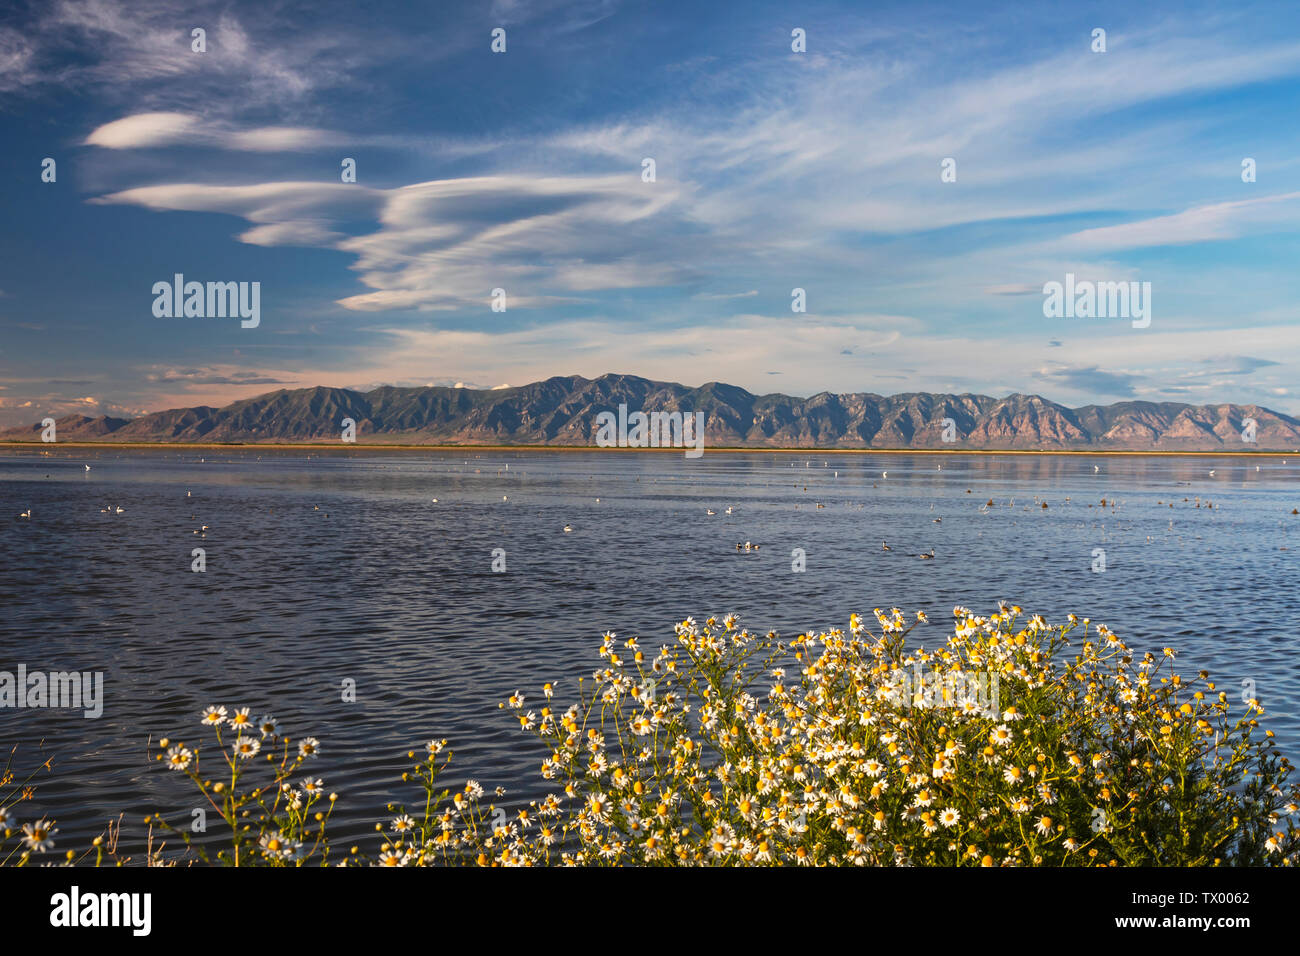 C'est une vue de la montagnes Wellsville dans la distance et les eaux de l'unité 2 de Bear River Refuge d'oiseaux migrateurs près de Brigham City, Utah, USA. Banque D'Images